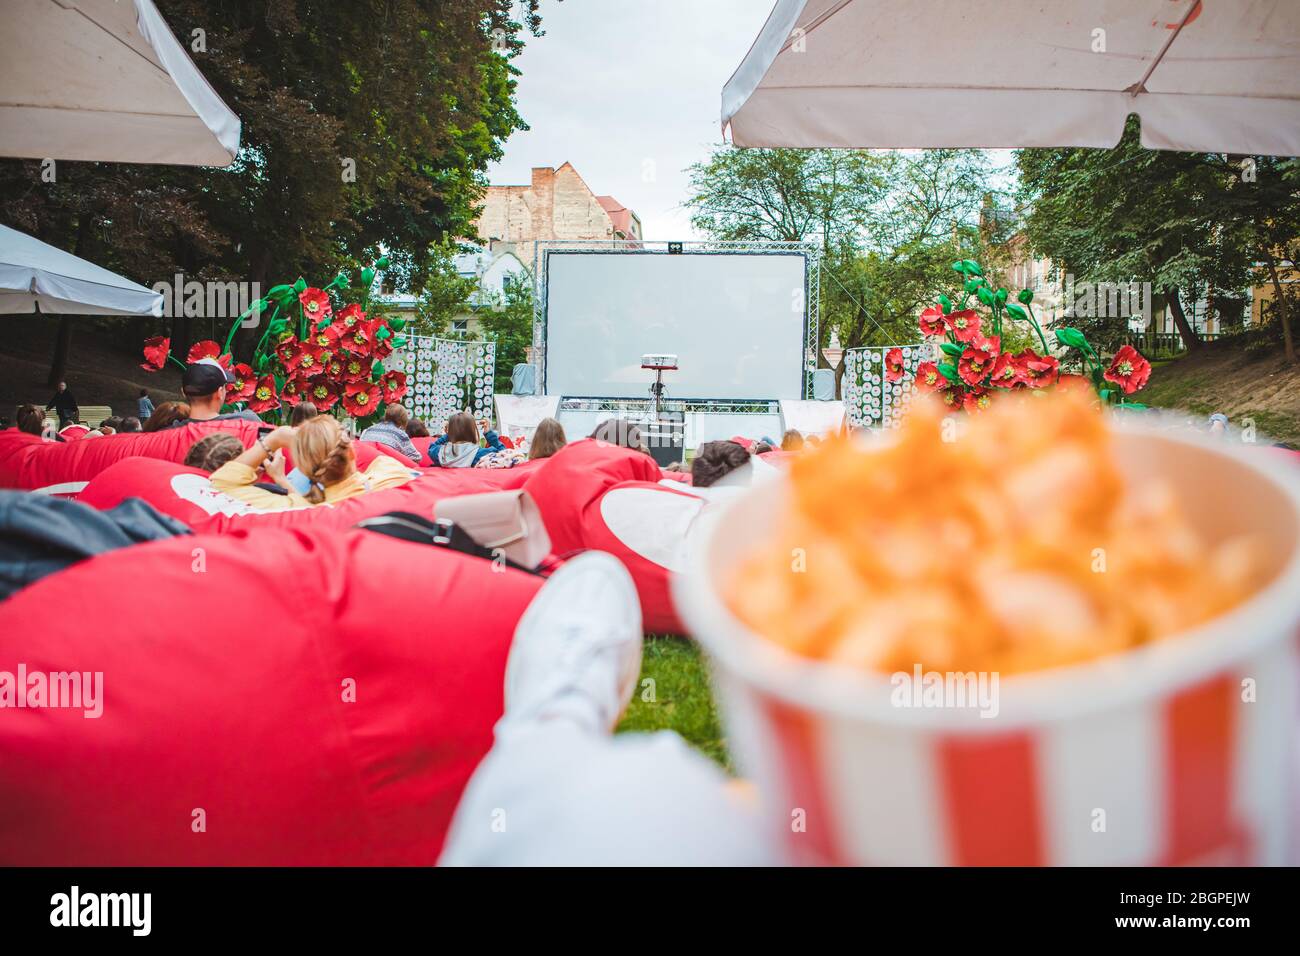 Legen Essen Snacks beim Film im Open Air Kino Stockfoto